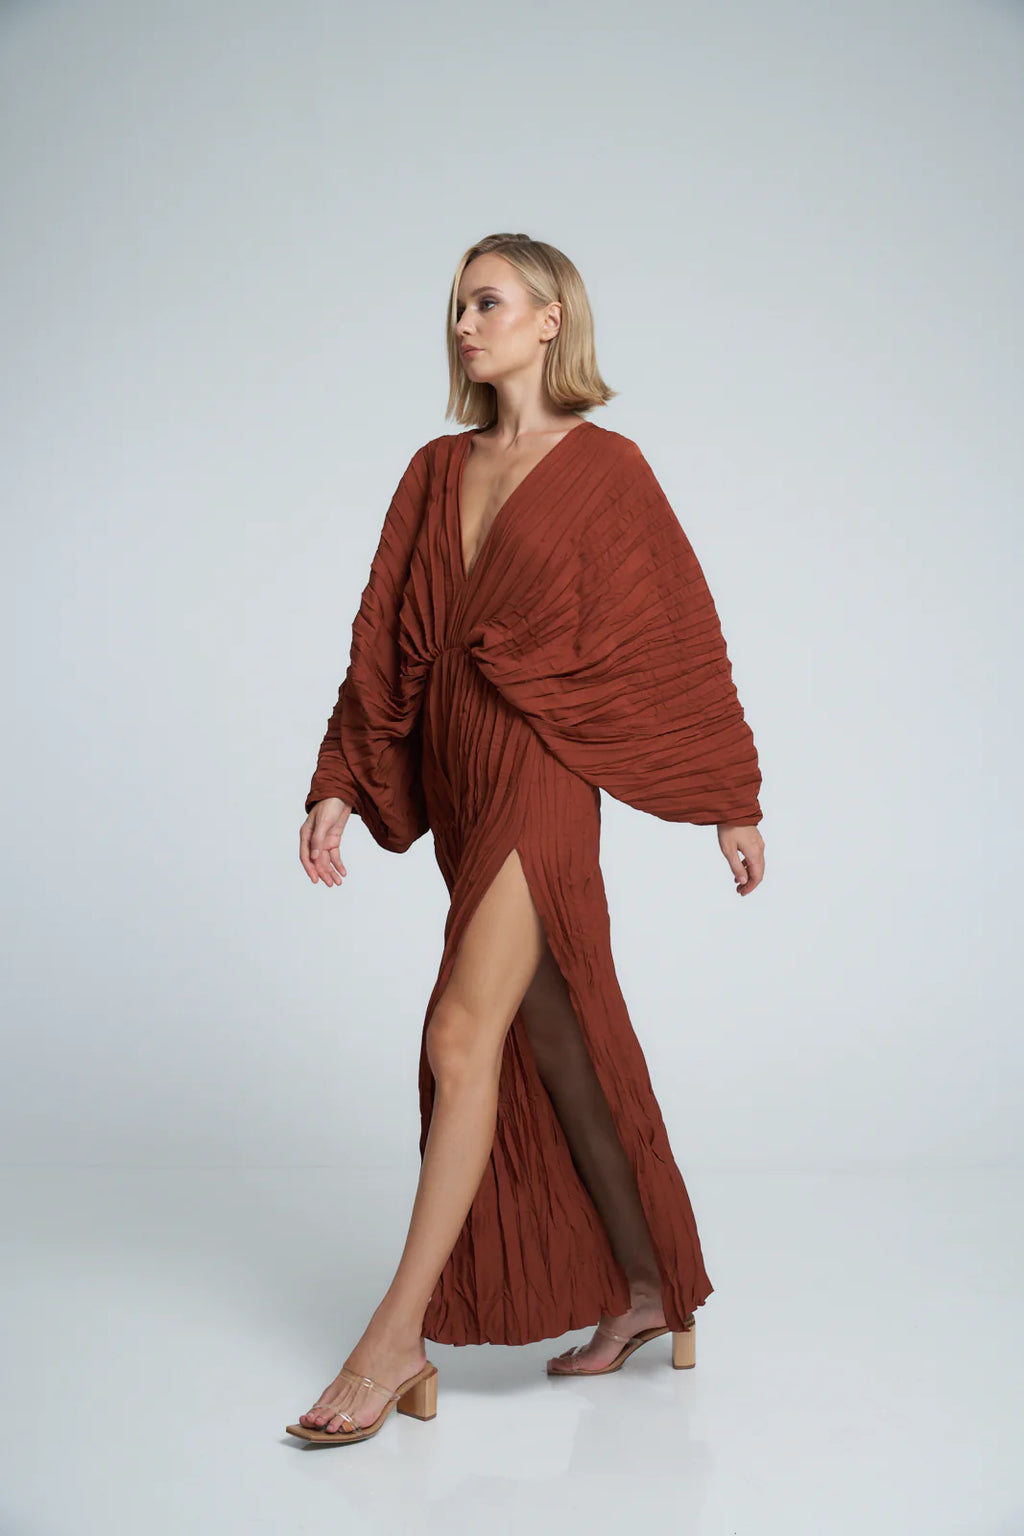 LIDEE - De Luxe Gown - Terracotta